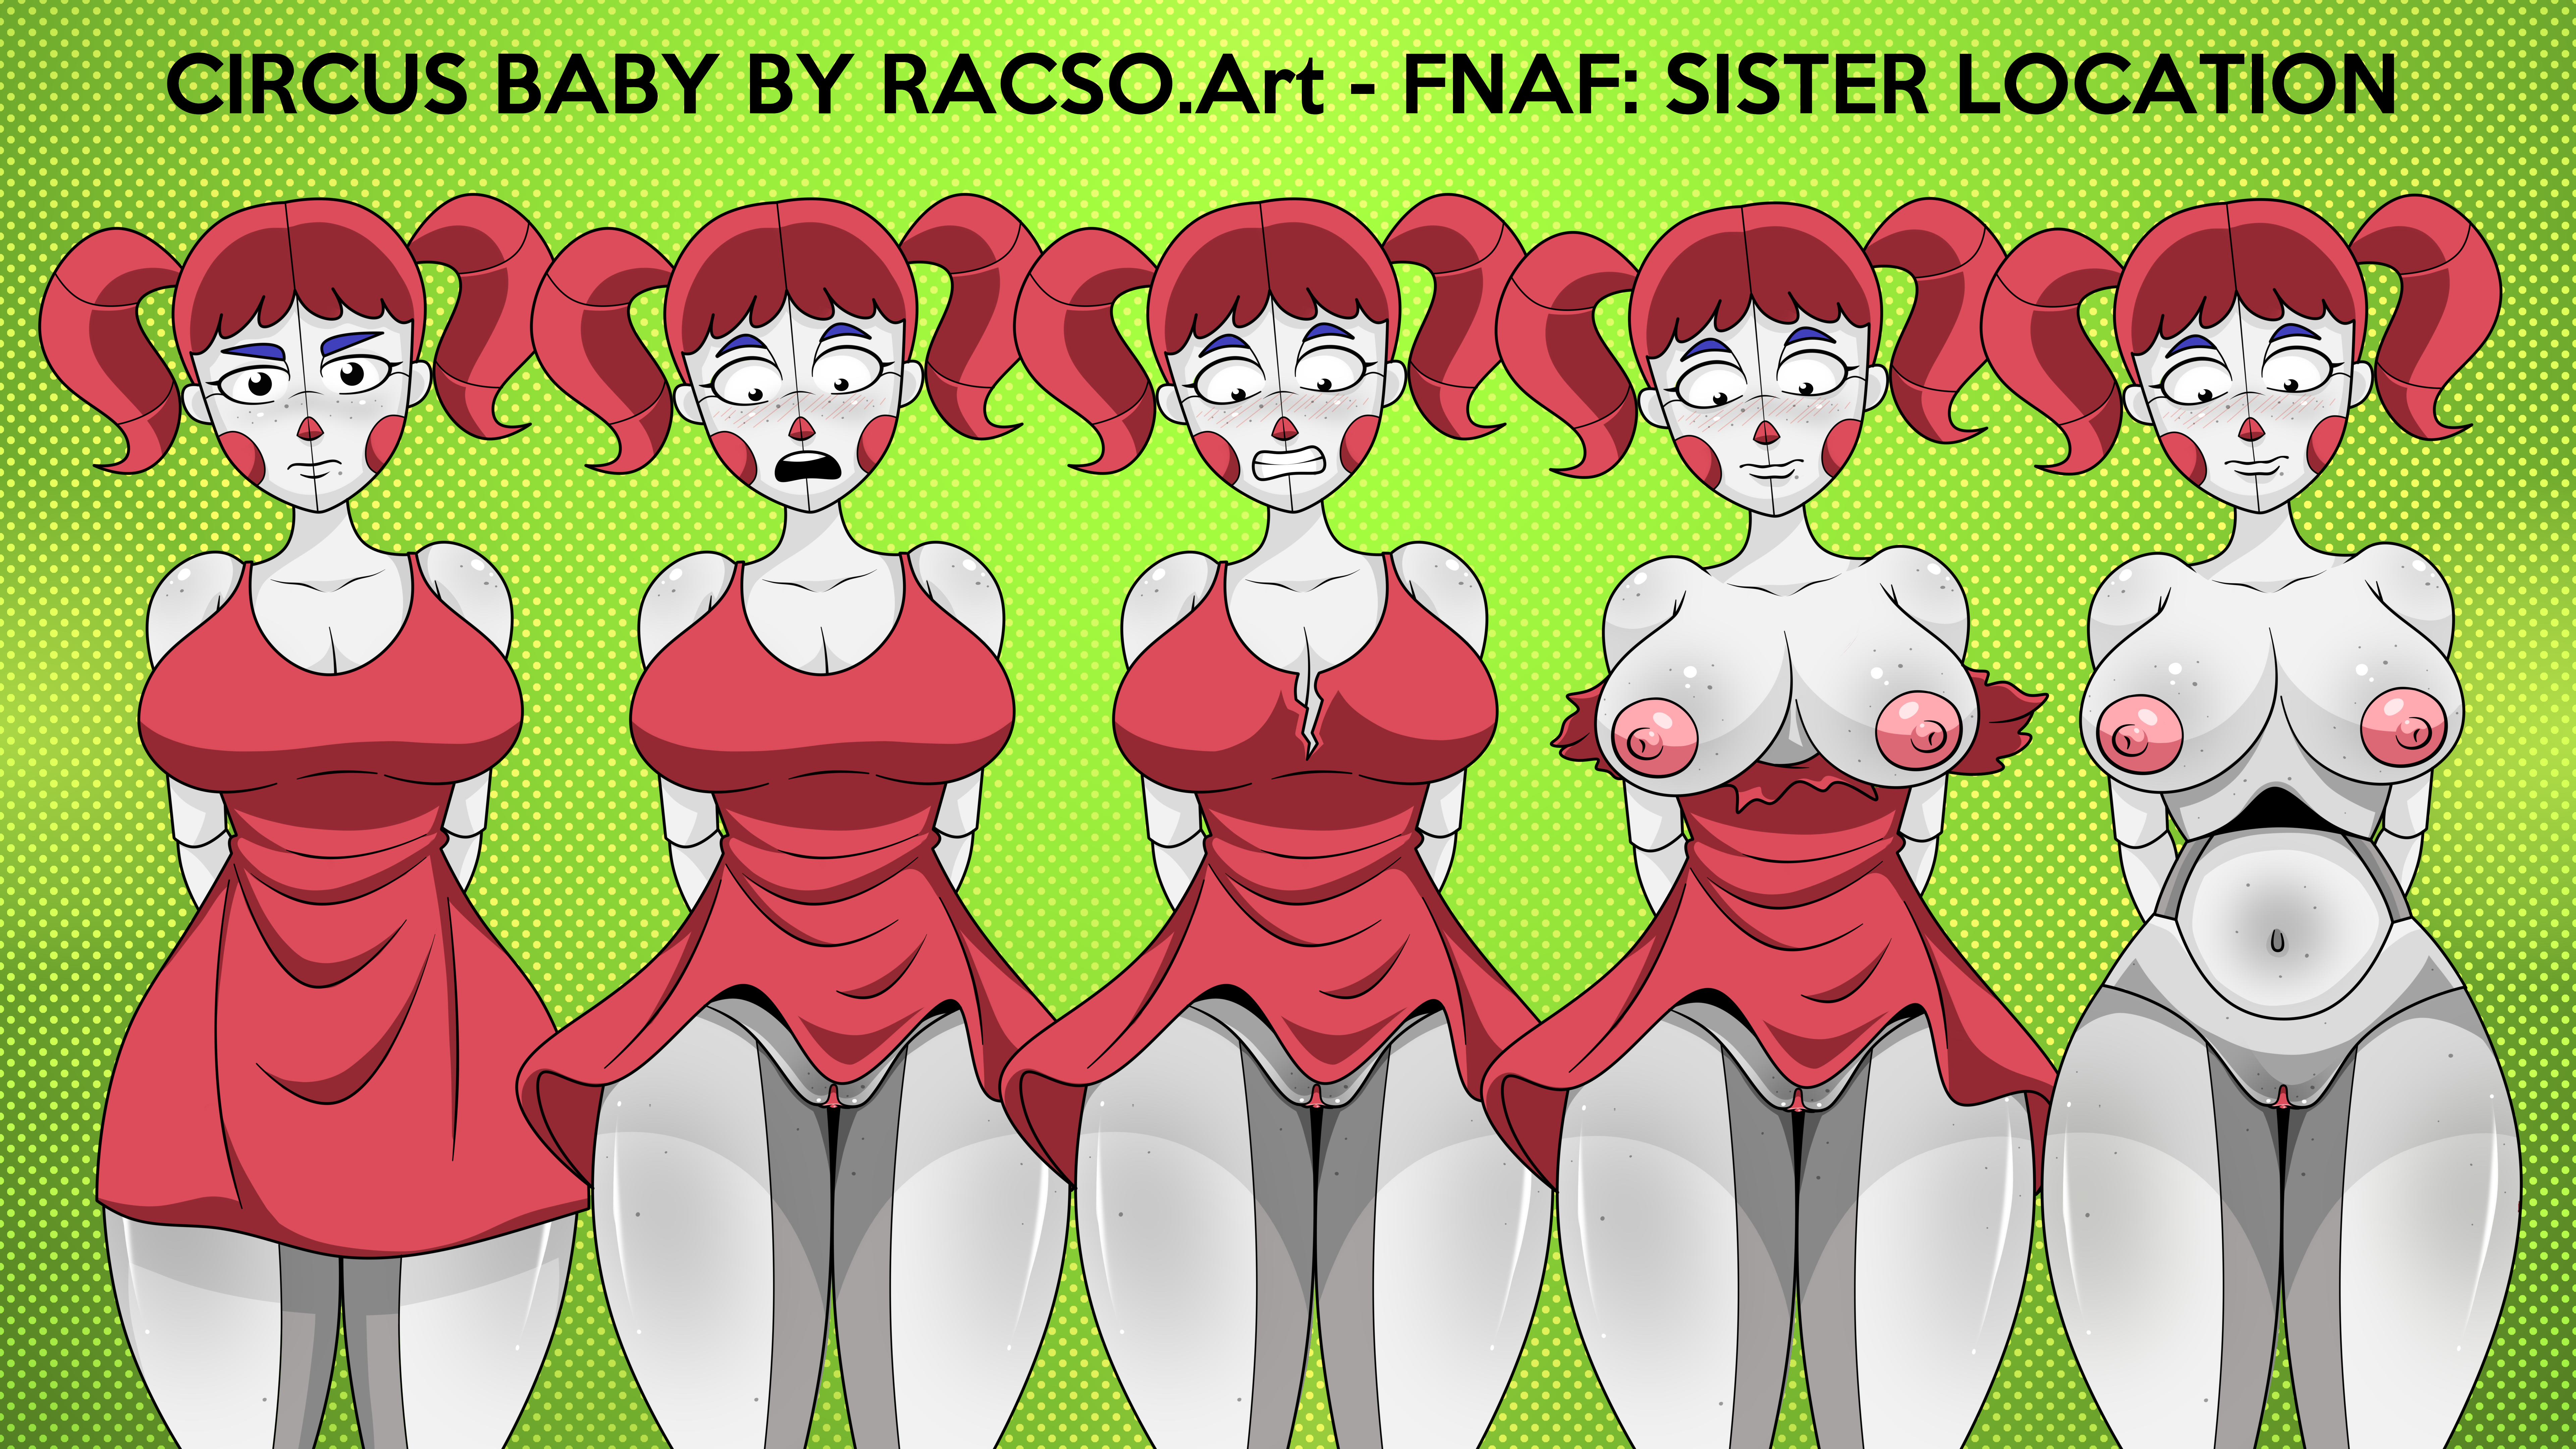 baby (fnafsl), circus baby, sister location, circus baby (fnaf), racso art.